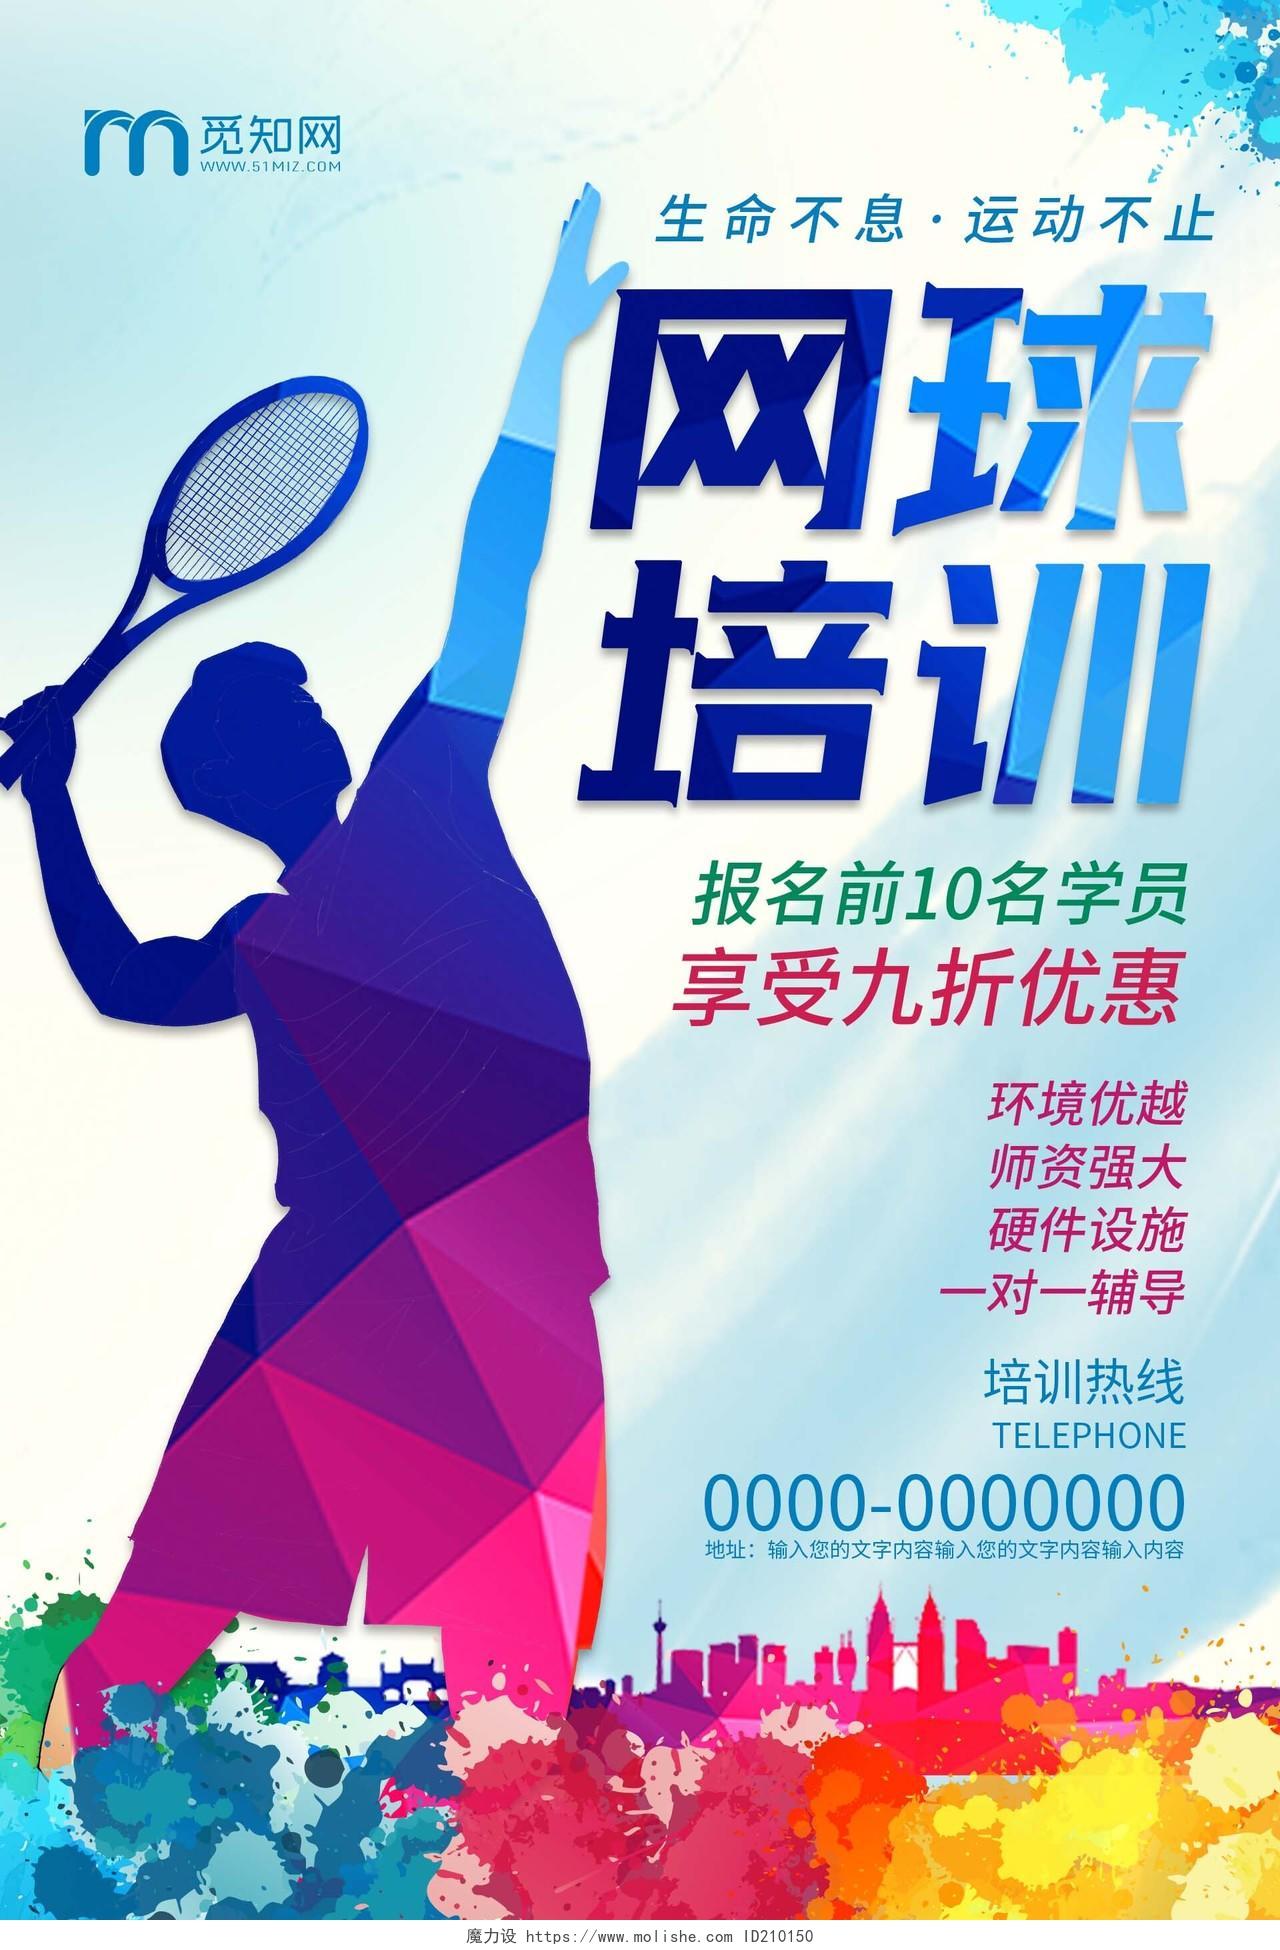 蓝色水墨网球培训招生海报网球招生